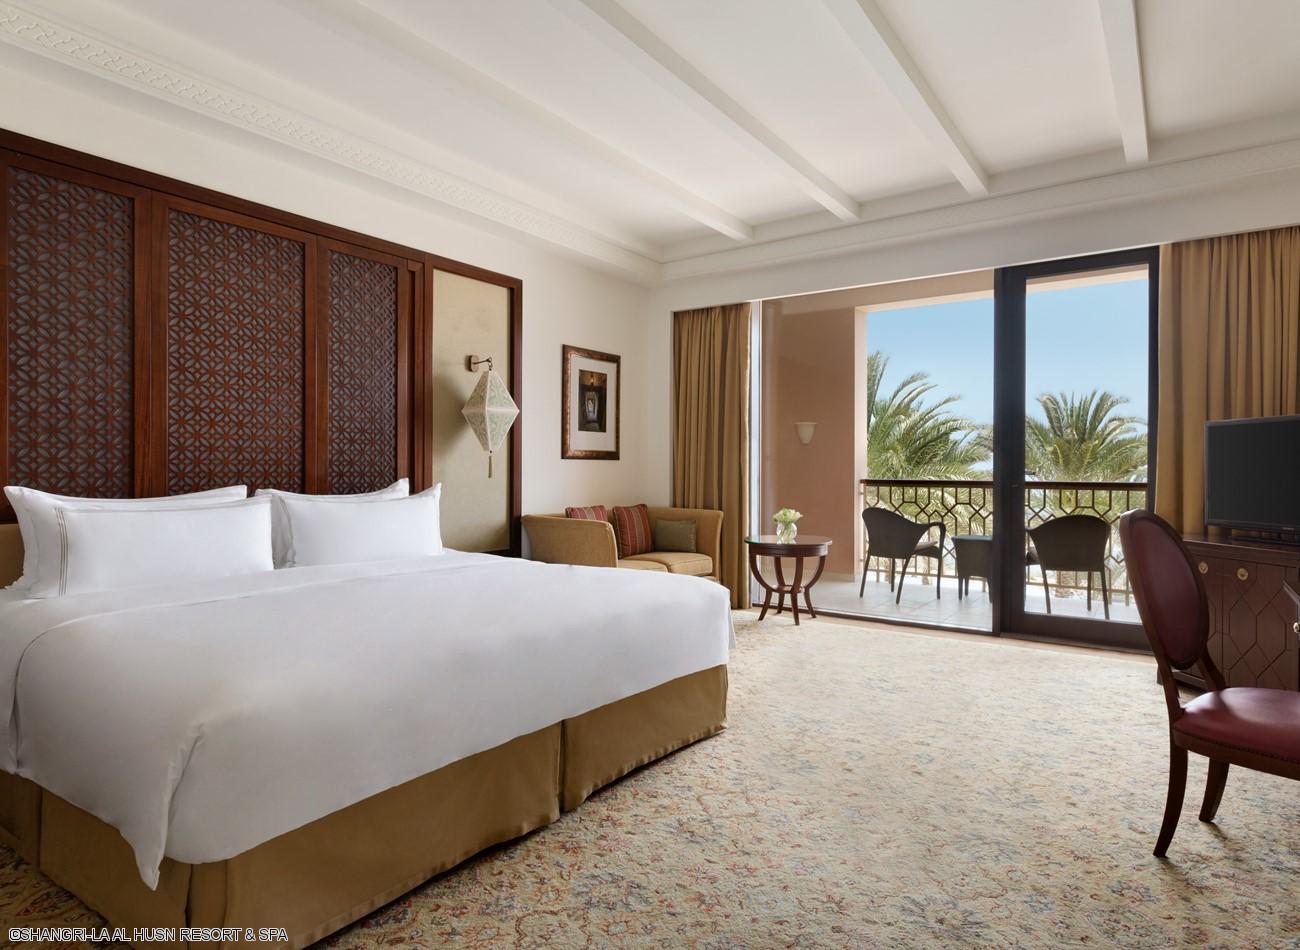 shangri-la-al-husni-resort-deluxe-room-king-bed-chambre-deluxe.